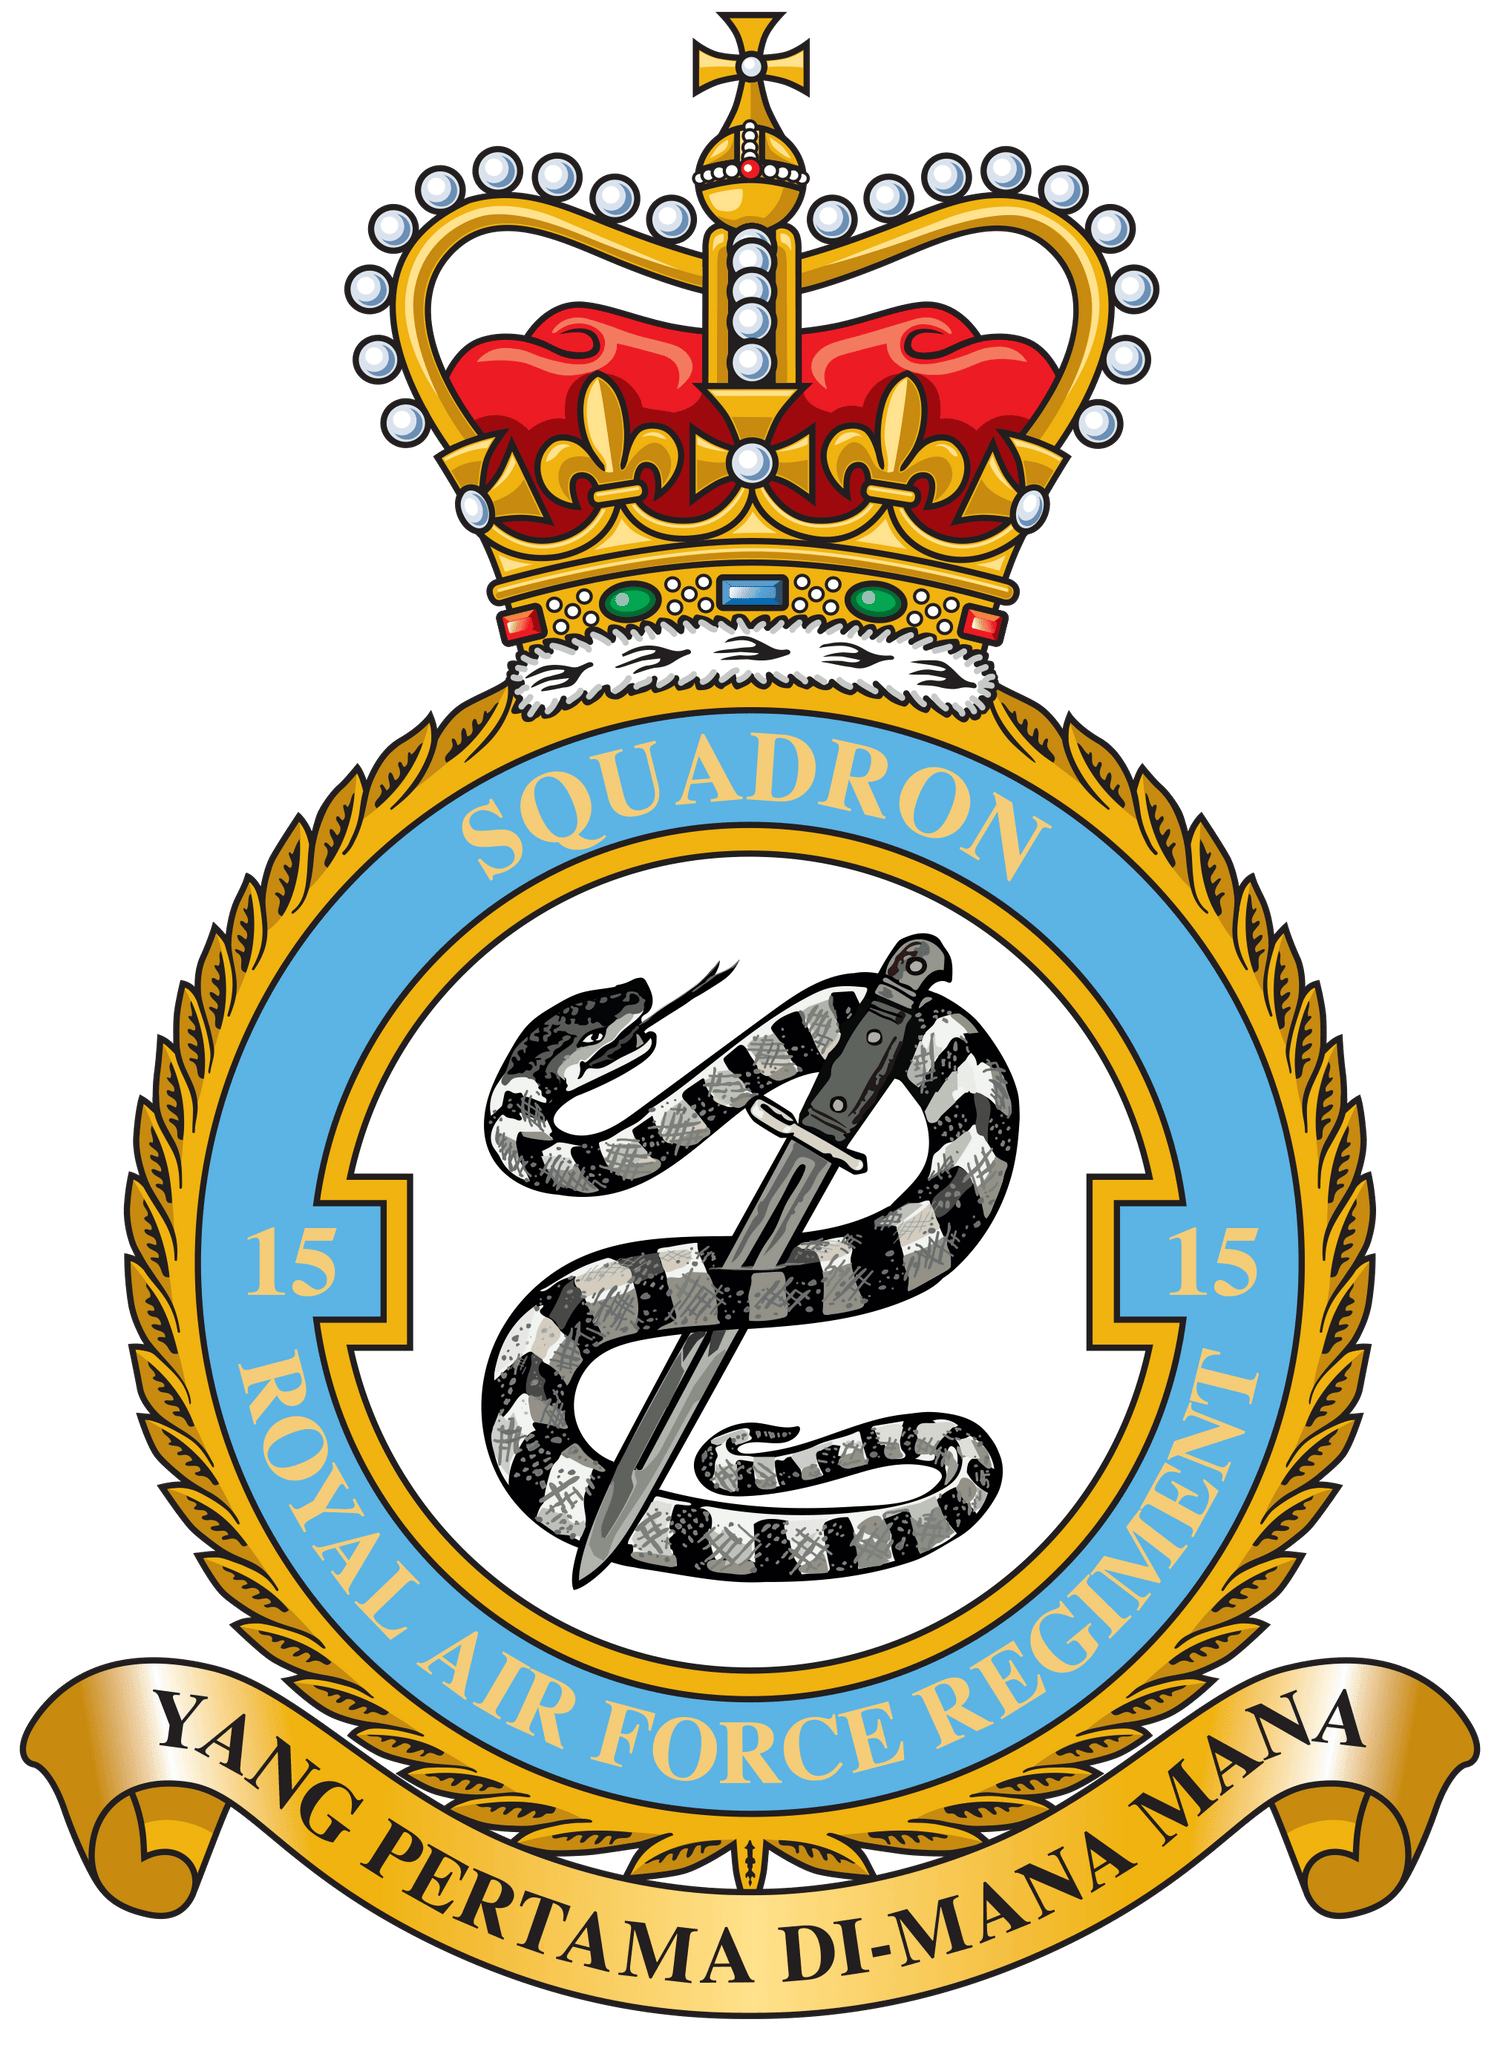 15 Sqn RAF Regiment